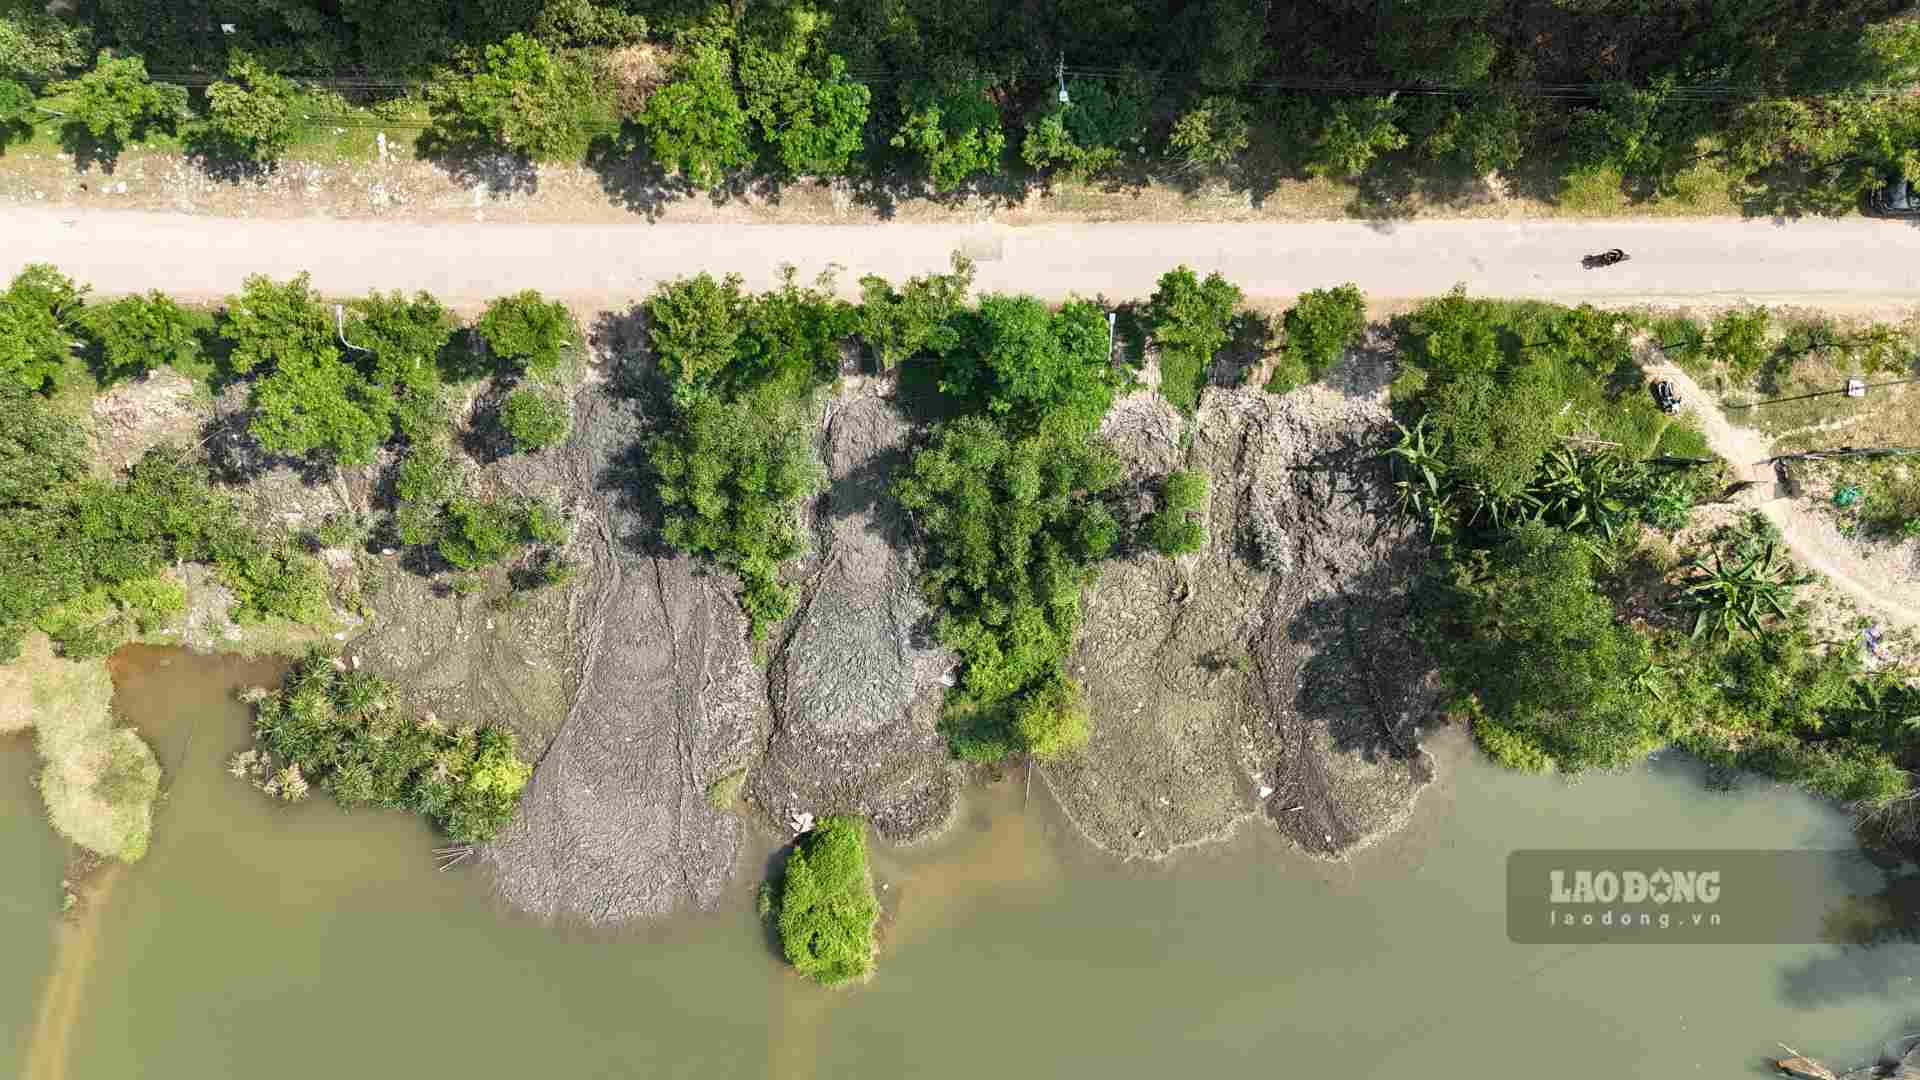  Nhìn từ trên cao có thể thấy, đã có vô số chuyến xe chở bùn thải đổ xả xuống khu vực hồ nước tại thôn Bằng Lãng, xã Thủy Bằng (TP. Huế) suốt thời gian vừa qua.  